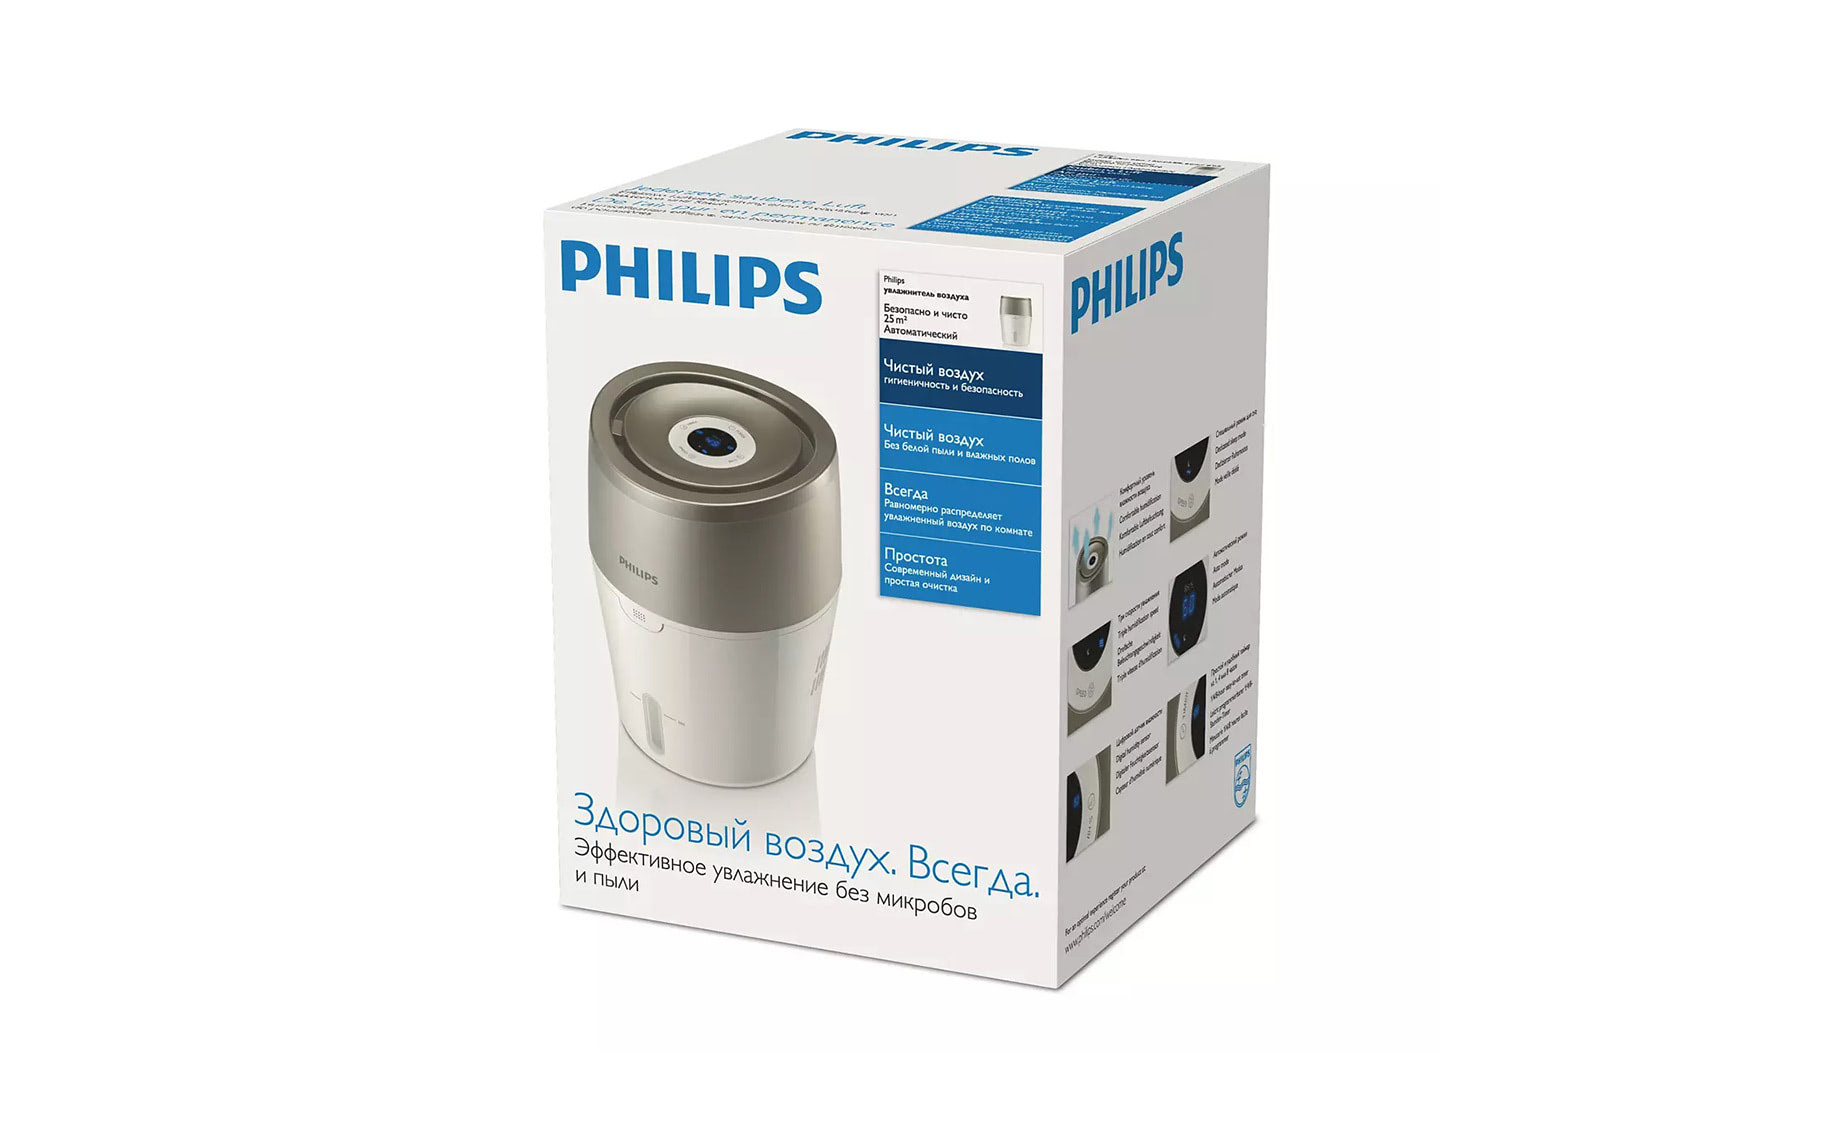 Philips HU4803/01 ovlaživač vazduha